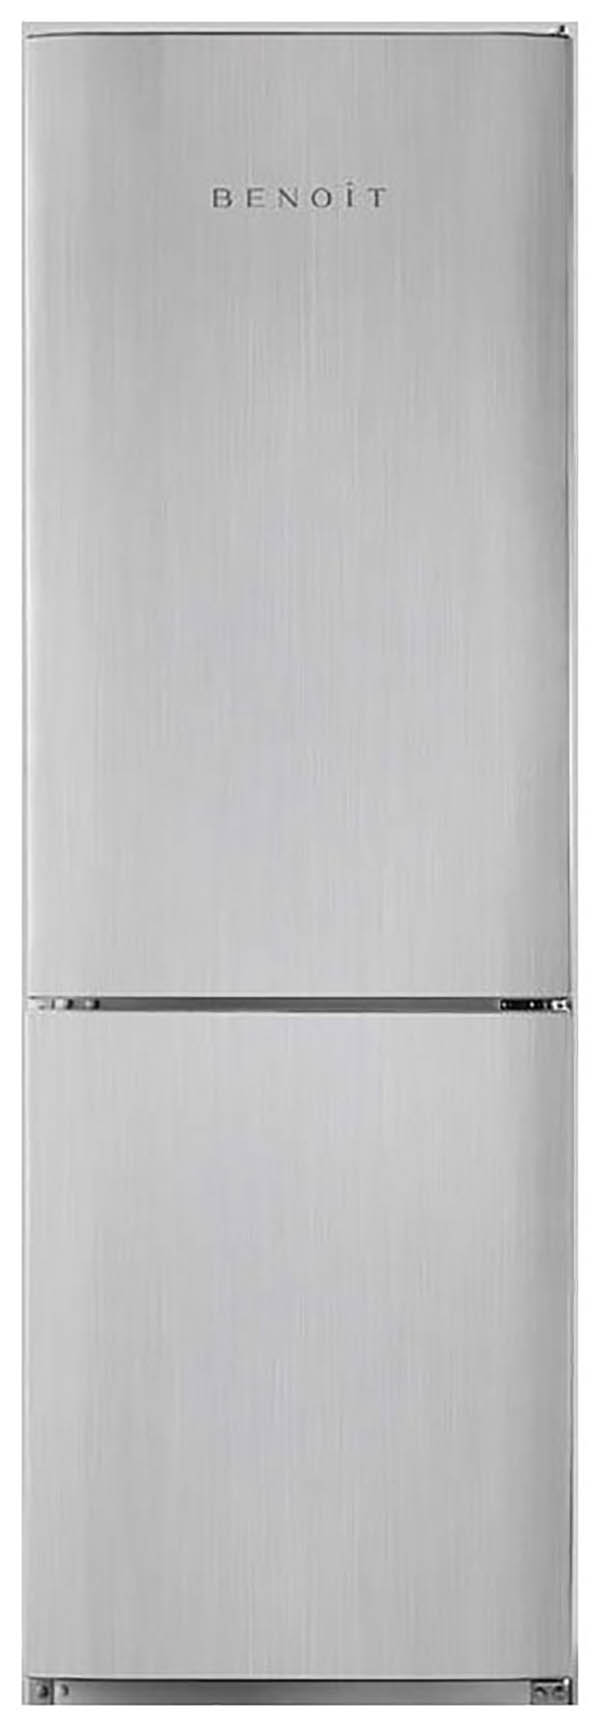 Холодильник Benoit 314 серебристый холодильник benoit 344e серебристый